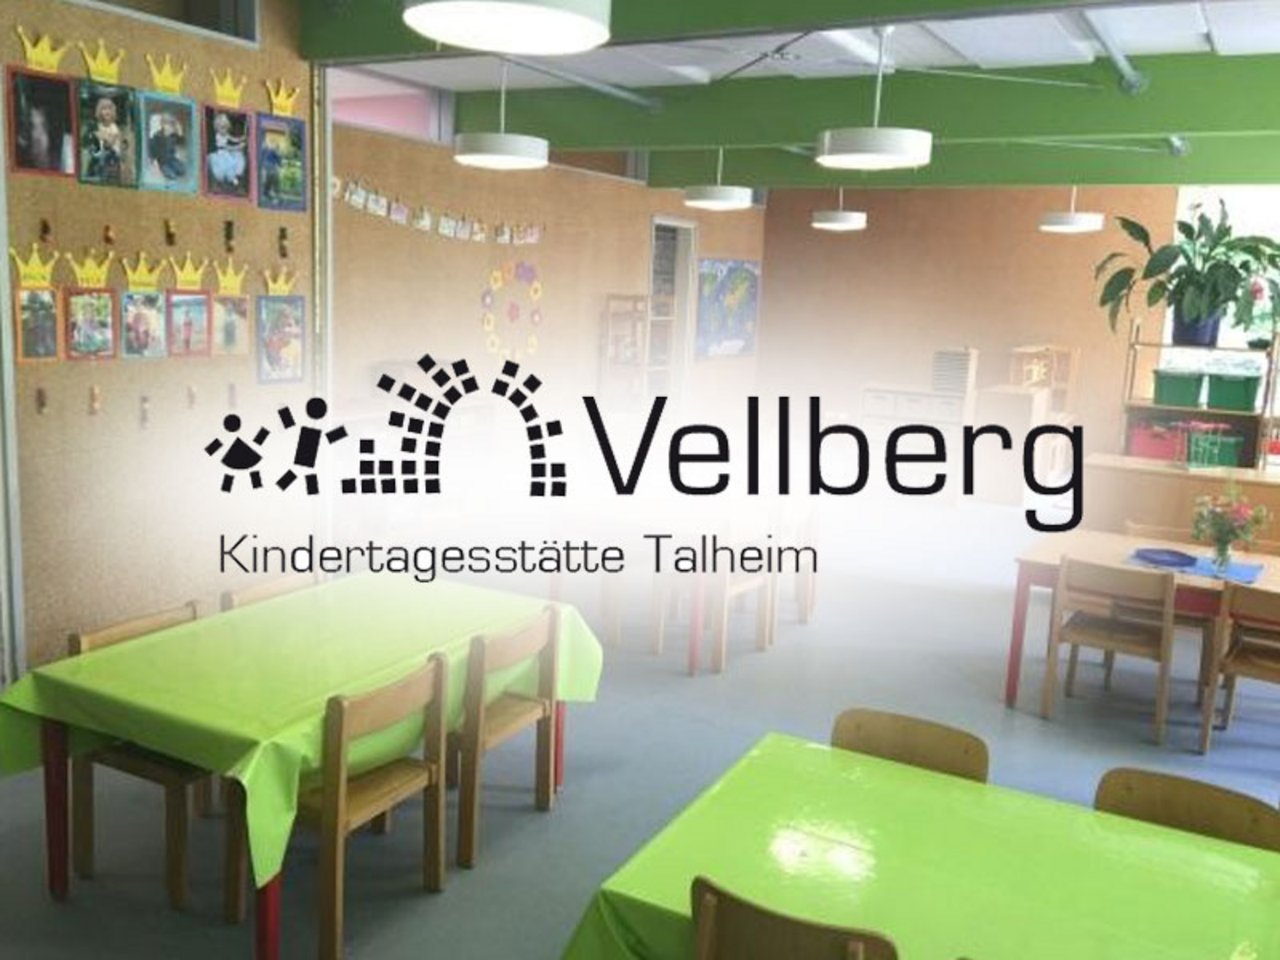 Weiter zum Kindergarten Talheim 